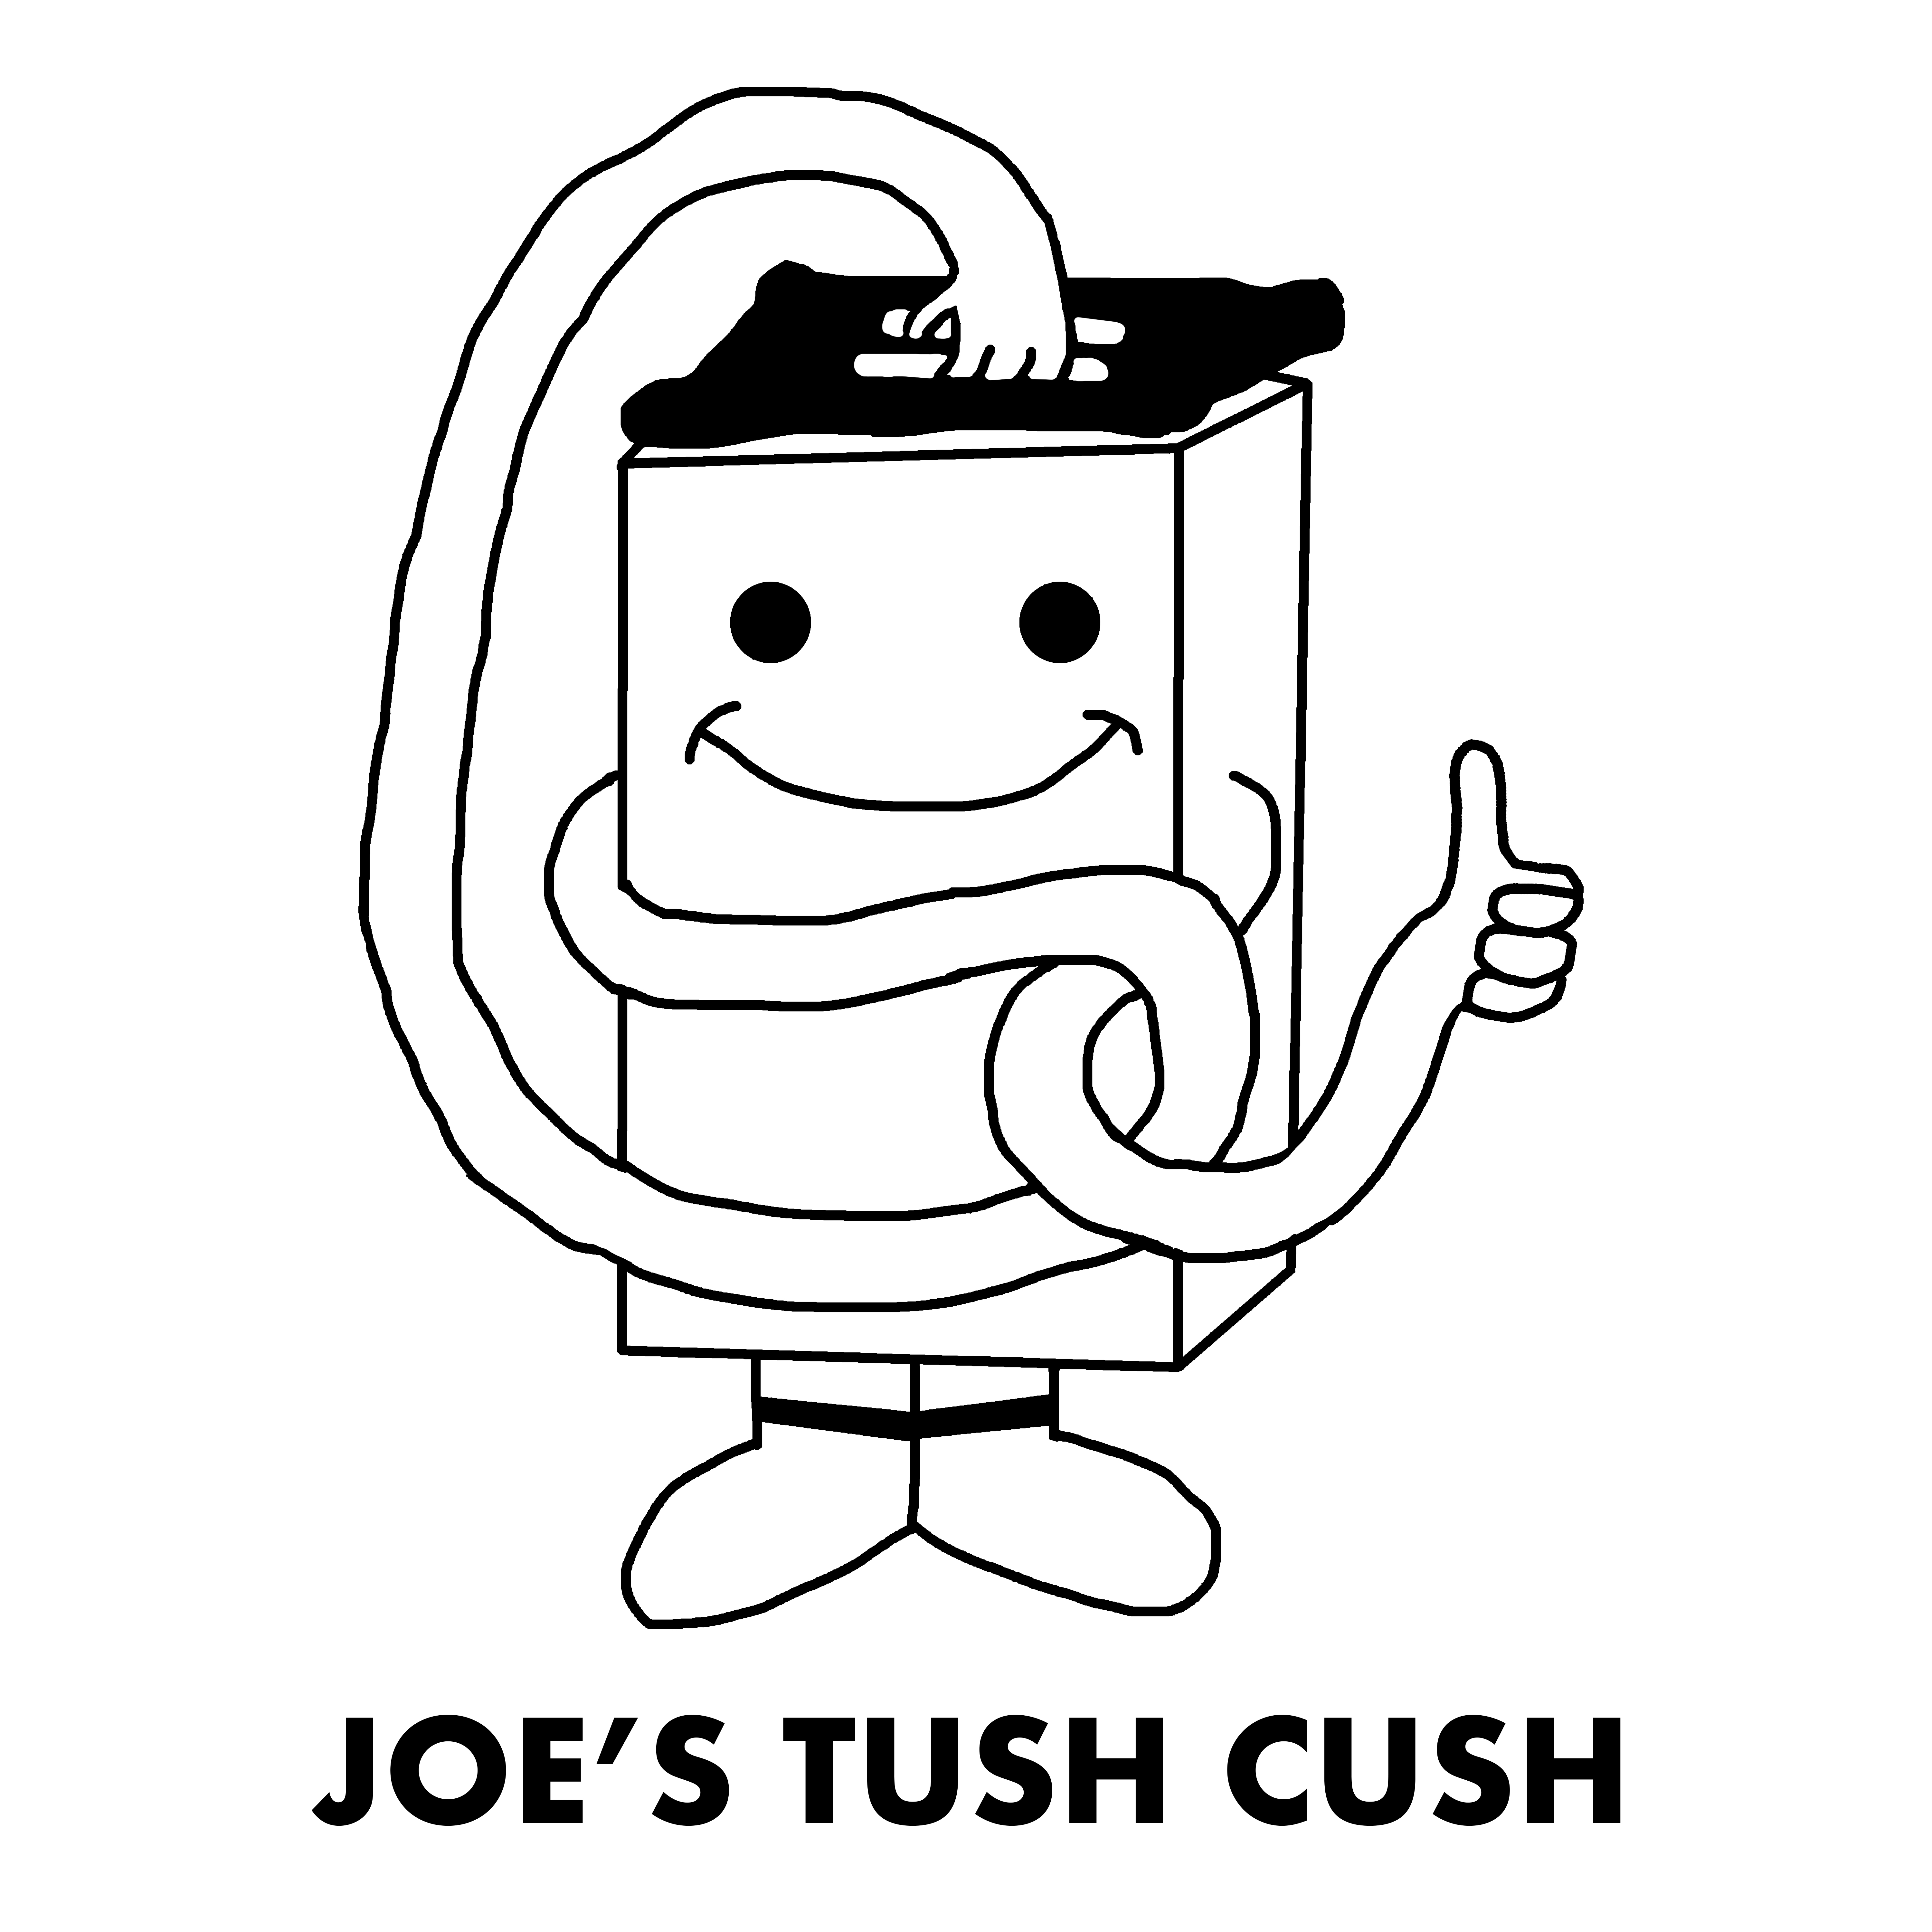 joe's tush cush [Bulk] - Click for more info!